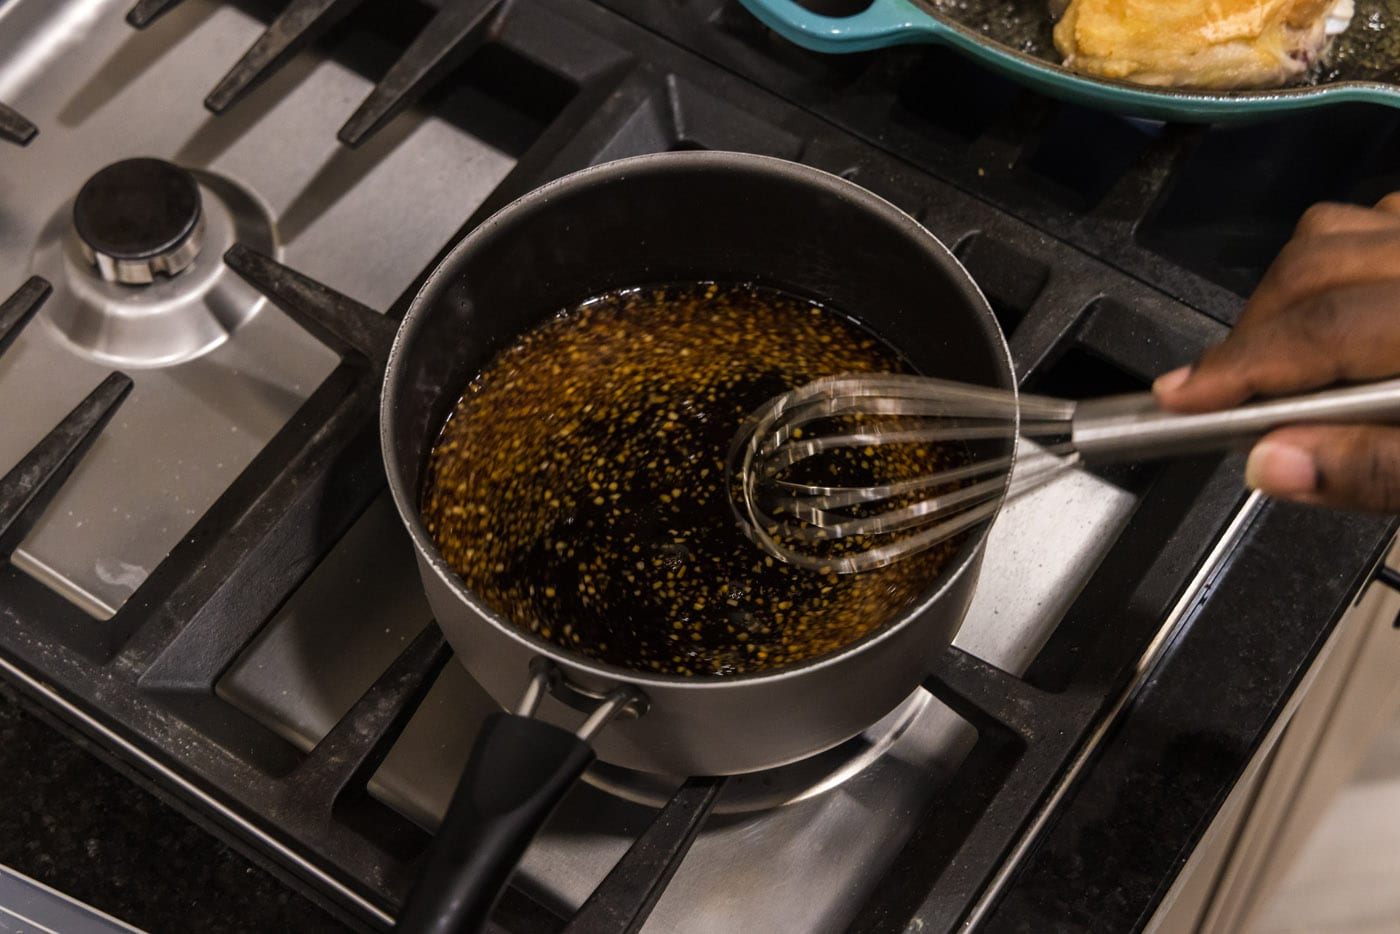 whisking honey garlic sauce in a saucepan